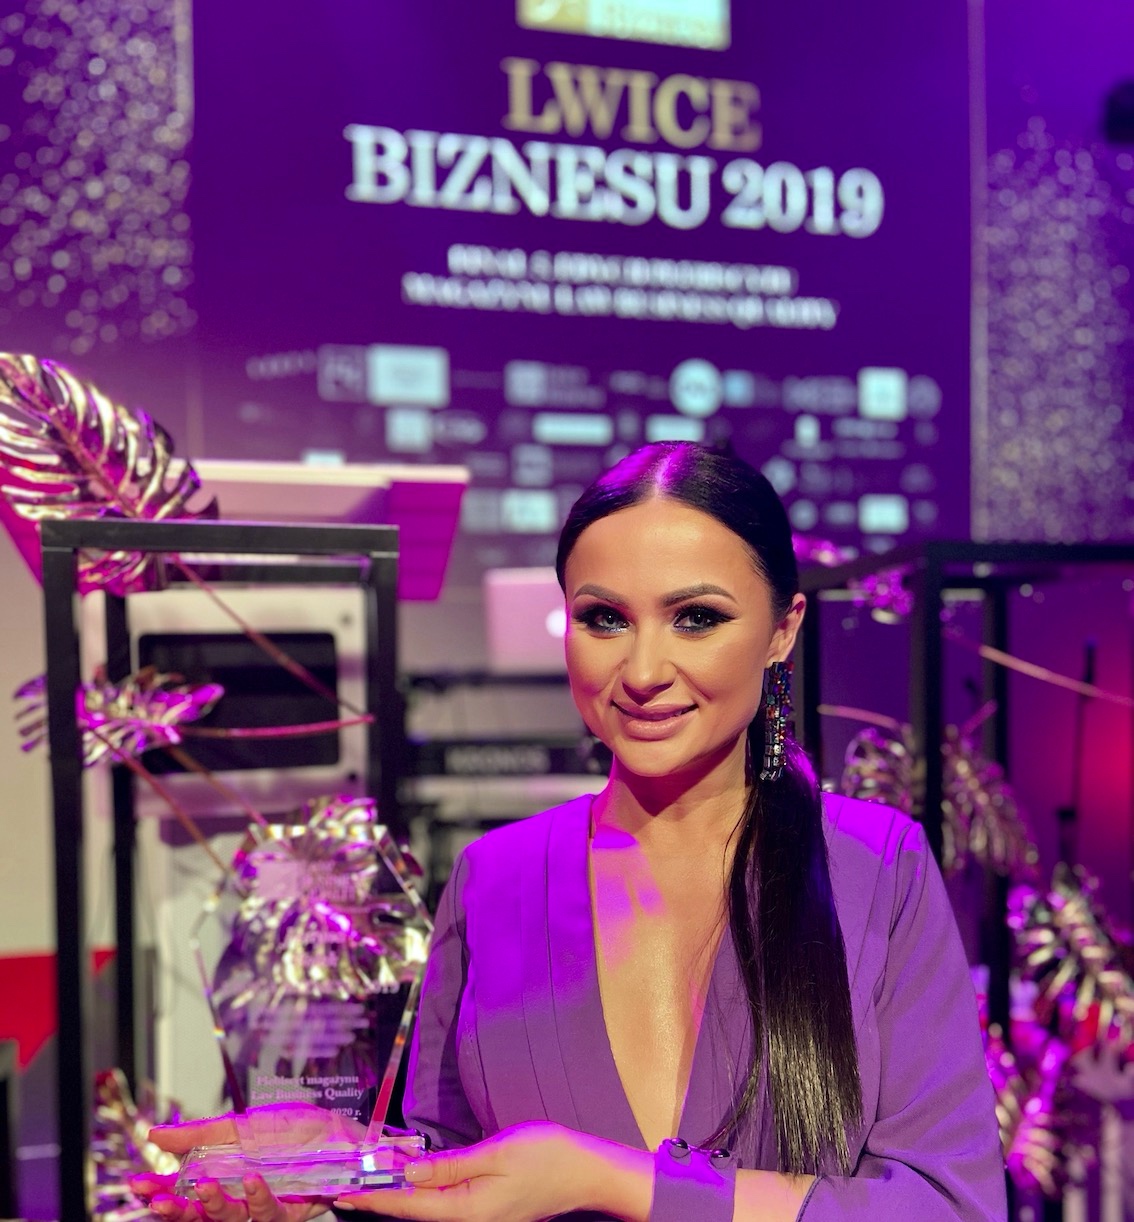 BlogStar: Justyna Bolek - Lwicą Biznesu 2019 - BlogStar.pl